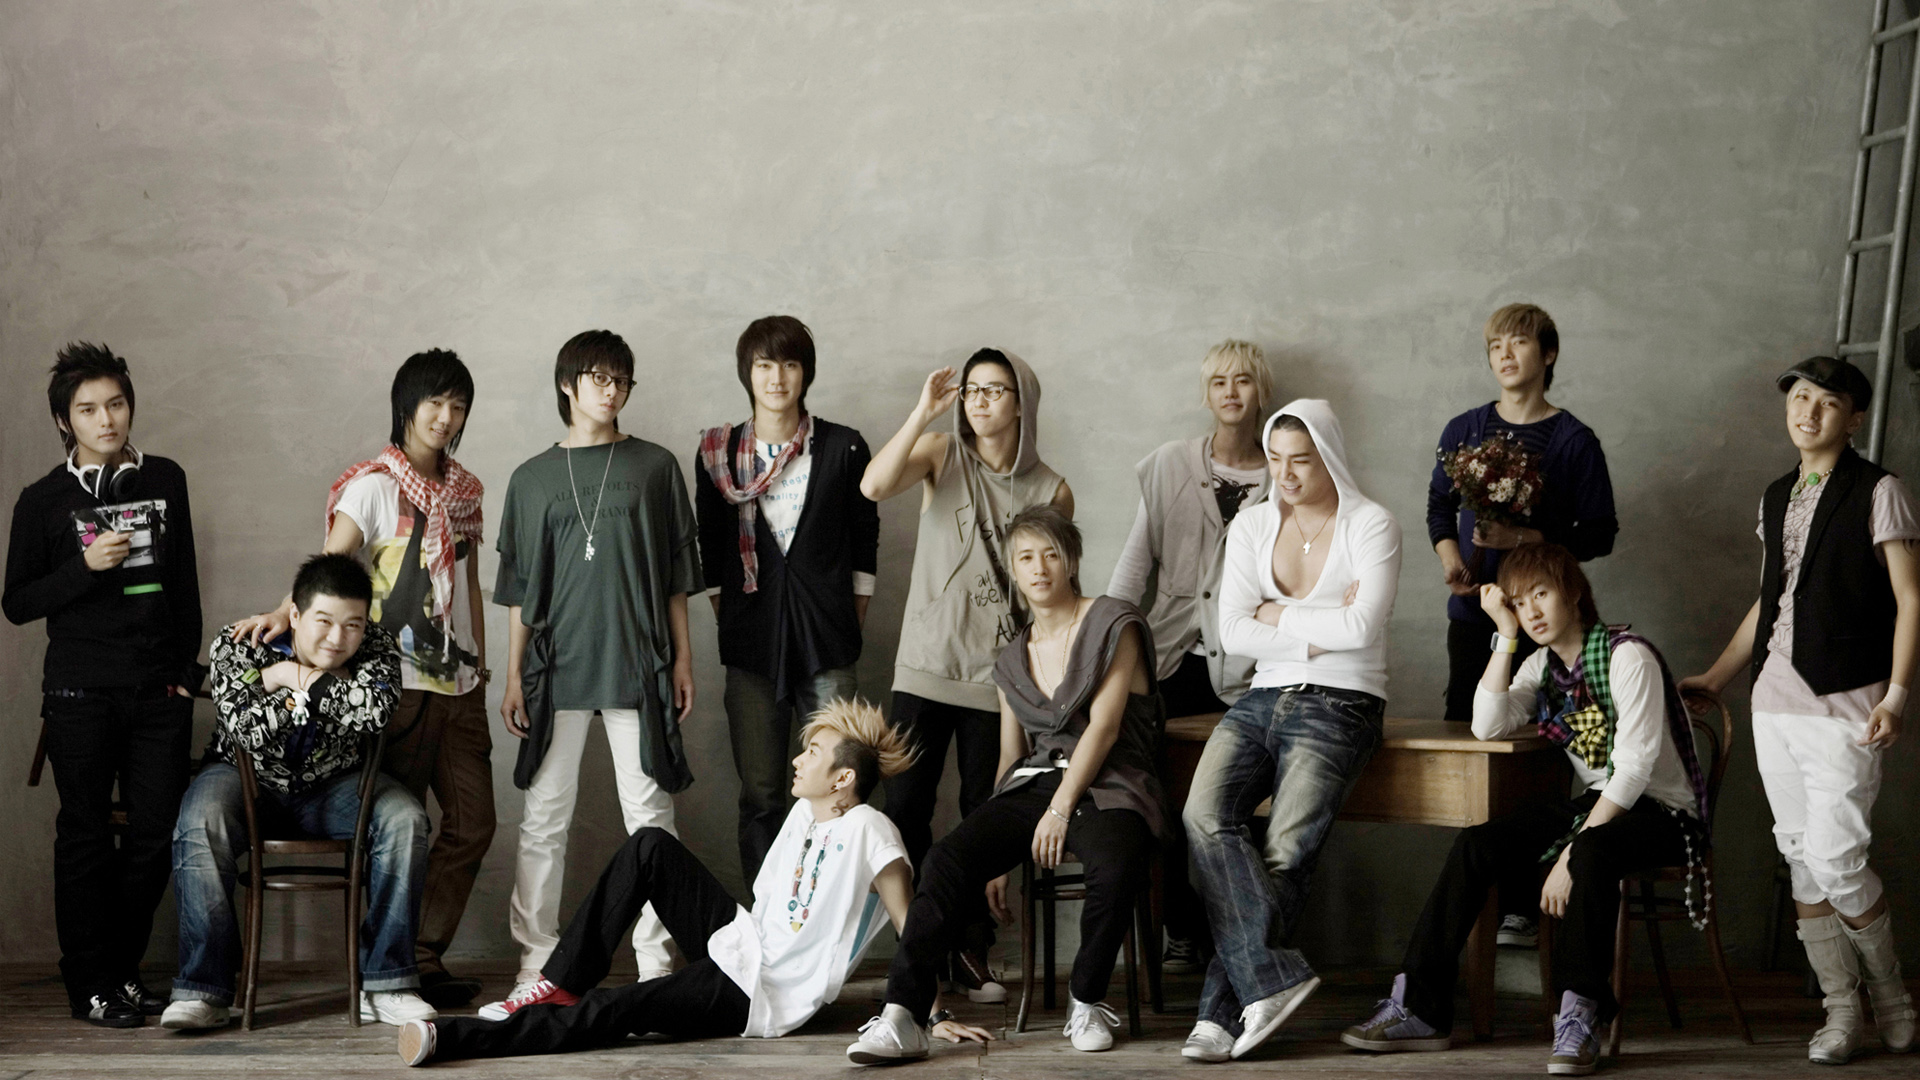 Super Junior - HD Wallpaper 